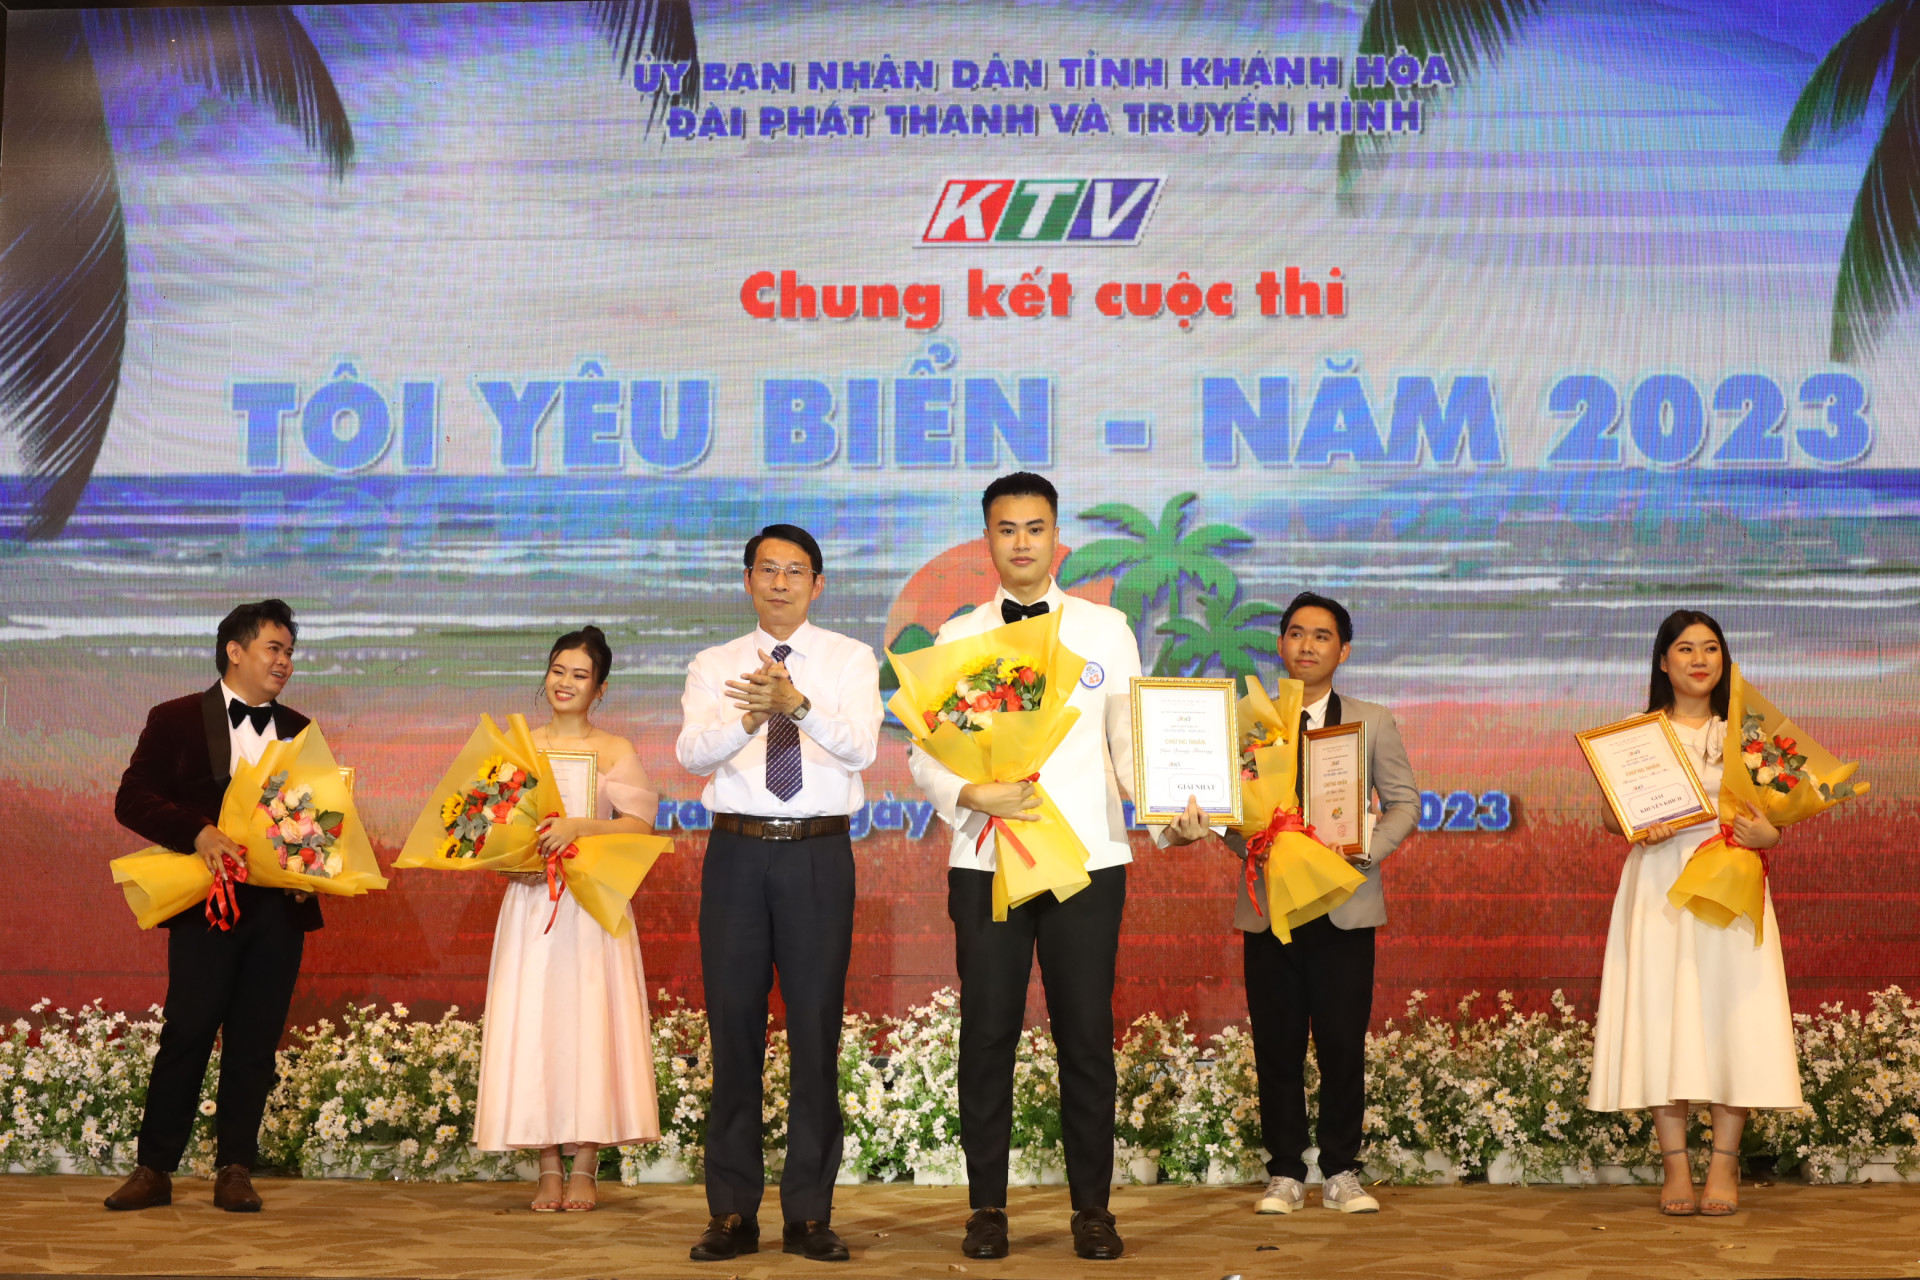 Đồng chí Đinh Văn Thiệu trao giải Nhất cuộc thi cho thí sinh Lâm Quang Trường.